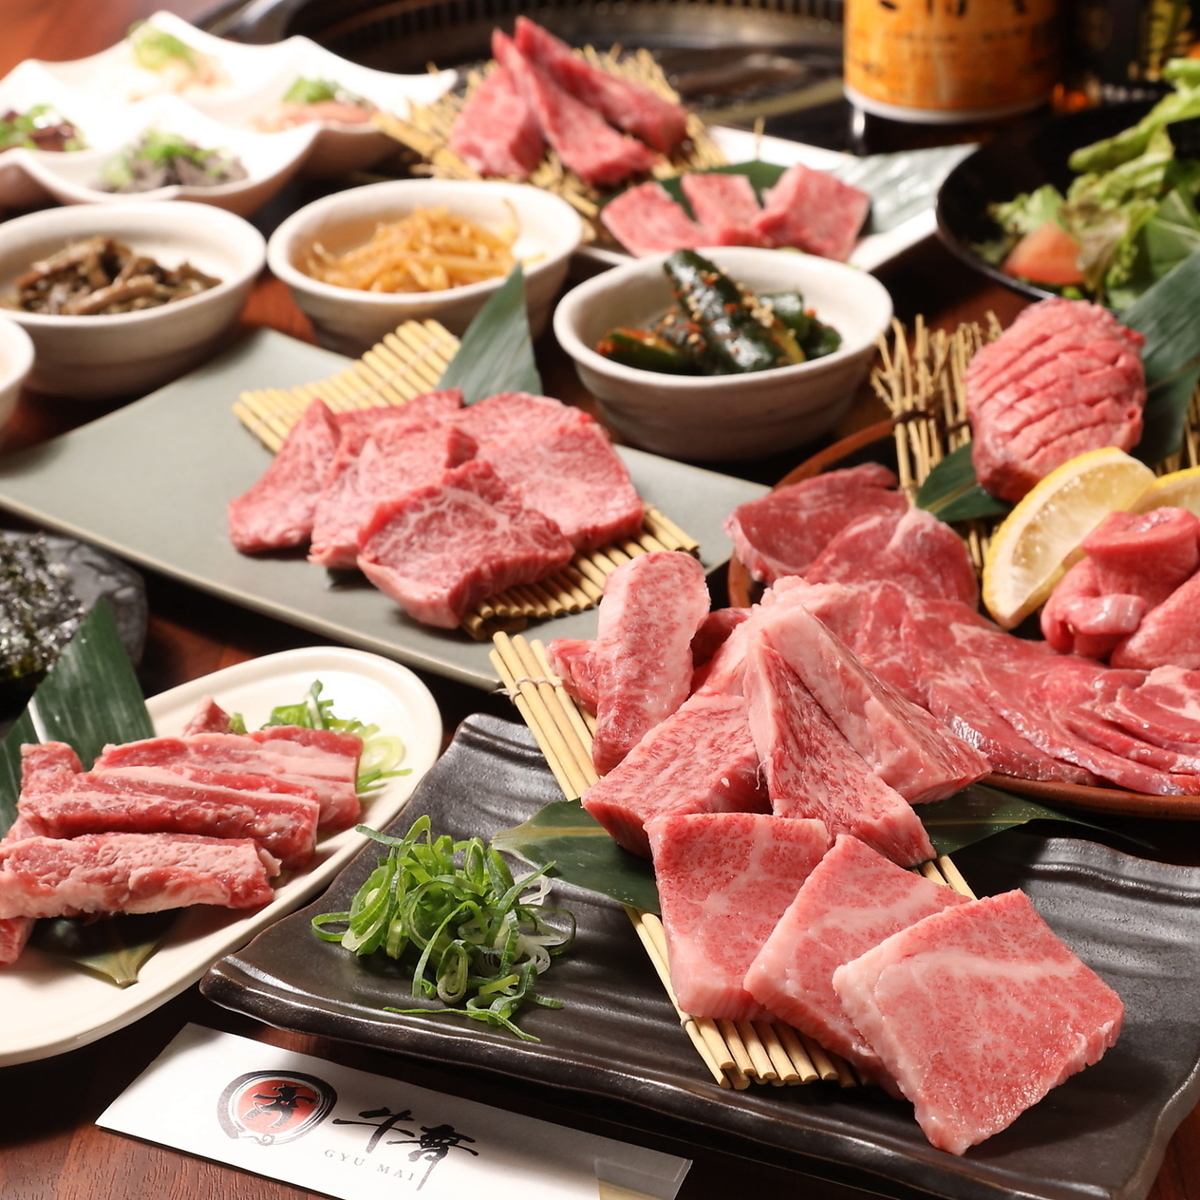 【부쿠로 쵸의 야키니쿠 가게】 쇠고기, 쇠고기 하라미, 각종 A5 등급 와규가 밀어! 점심, 뷔페가 있습니다!